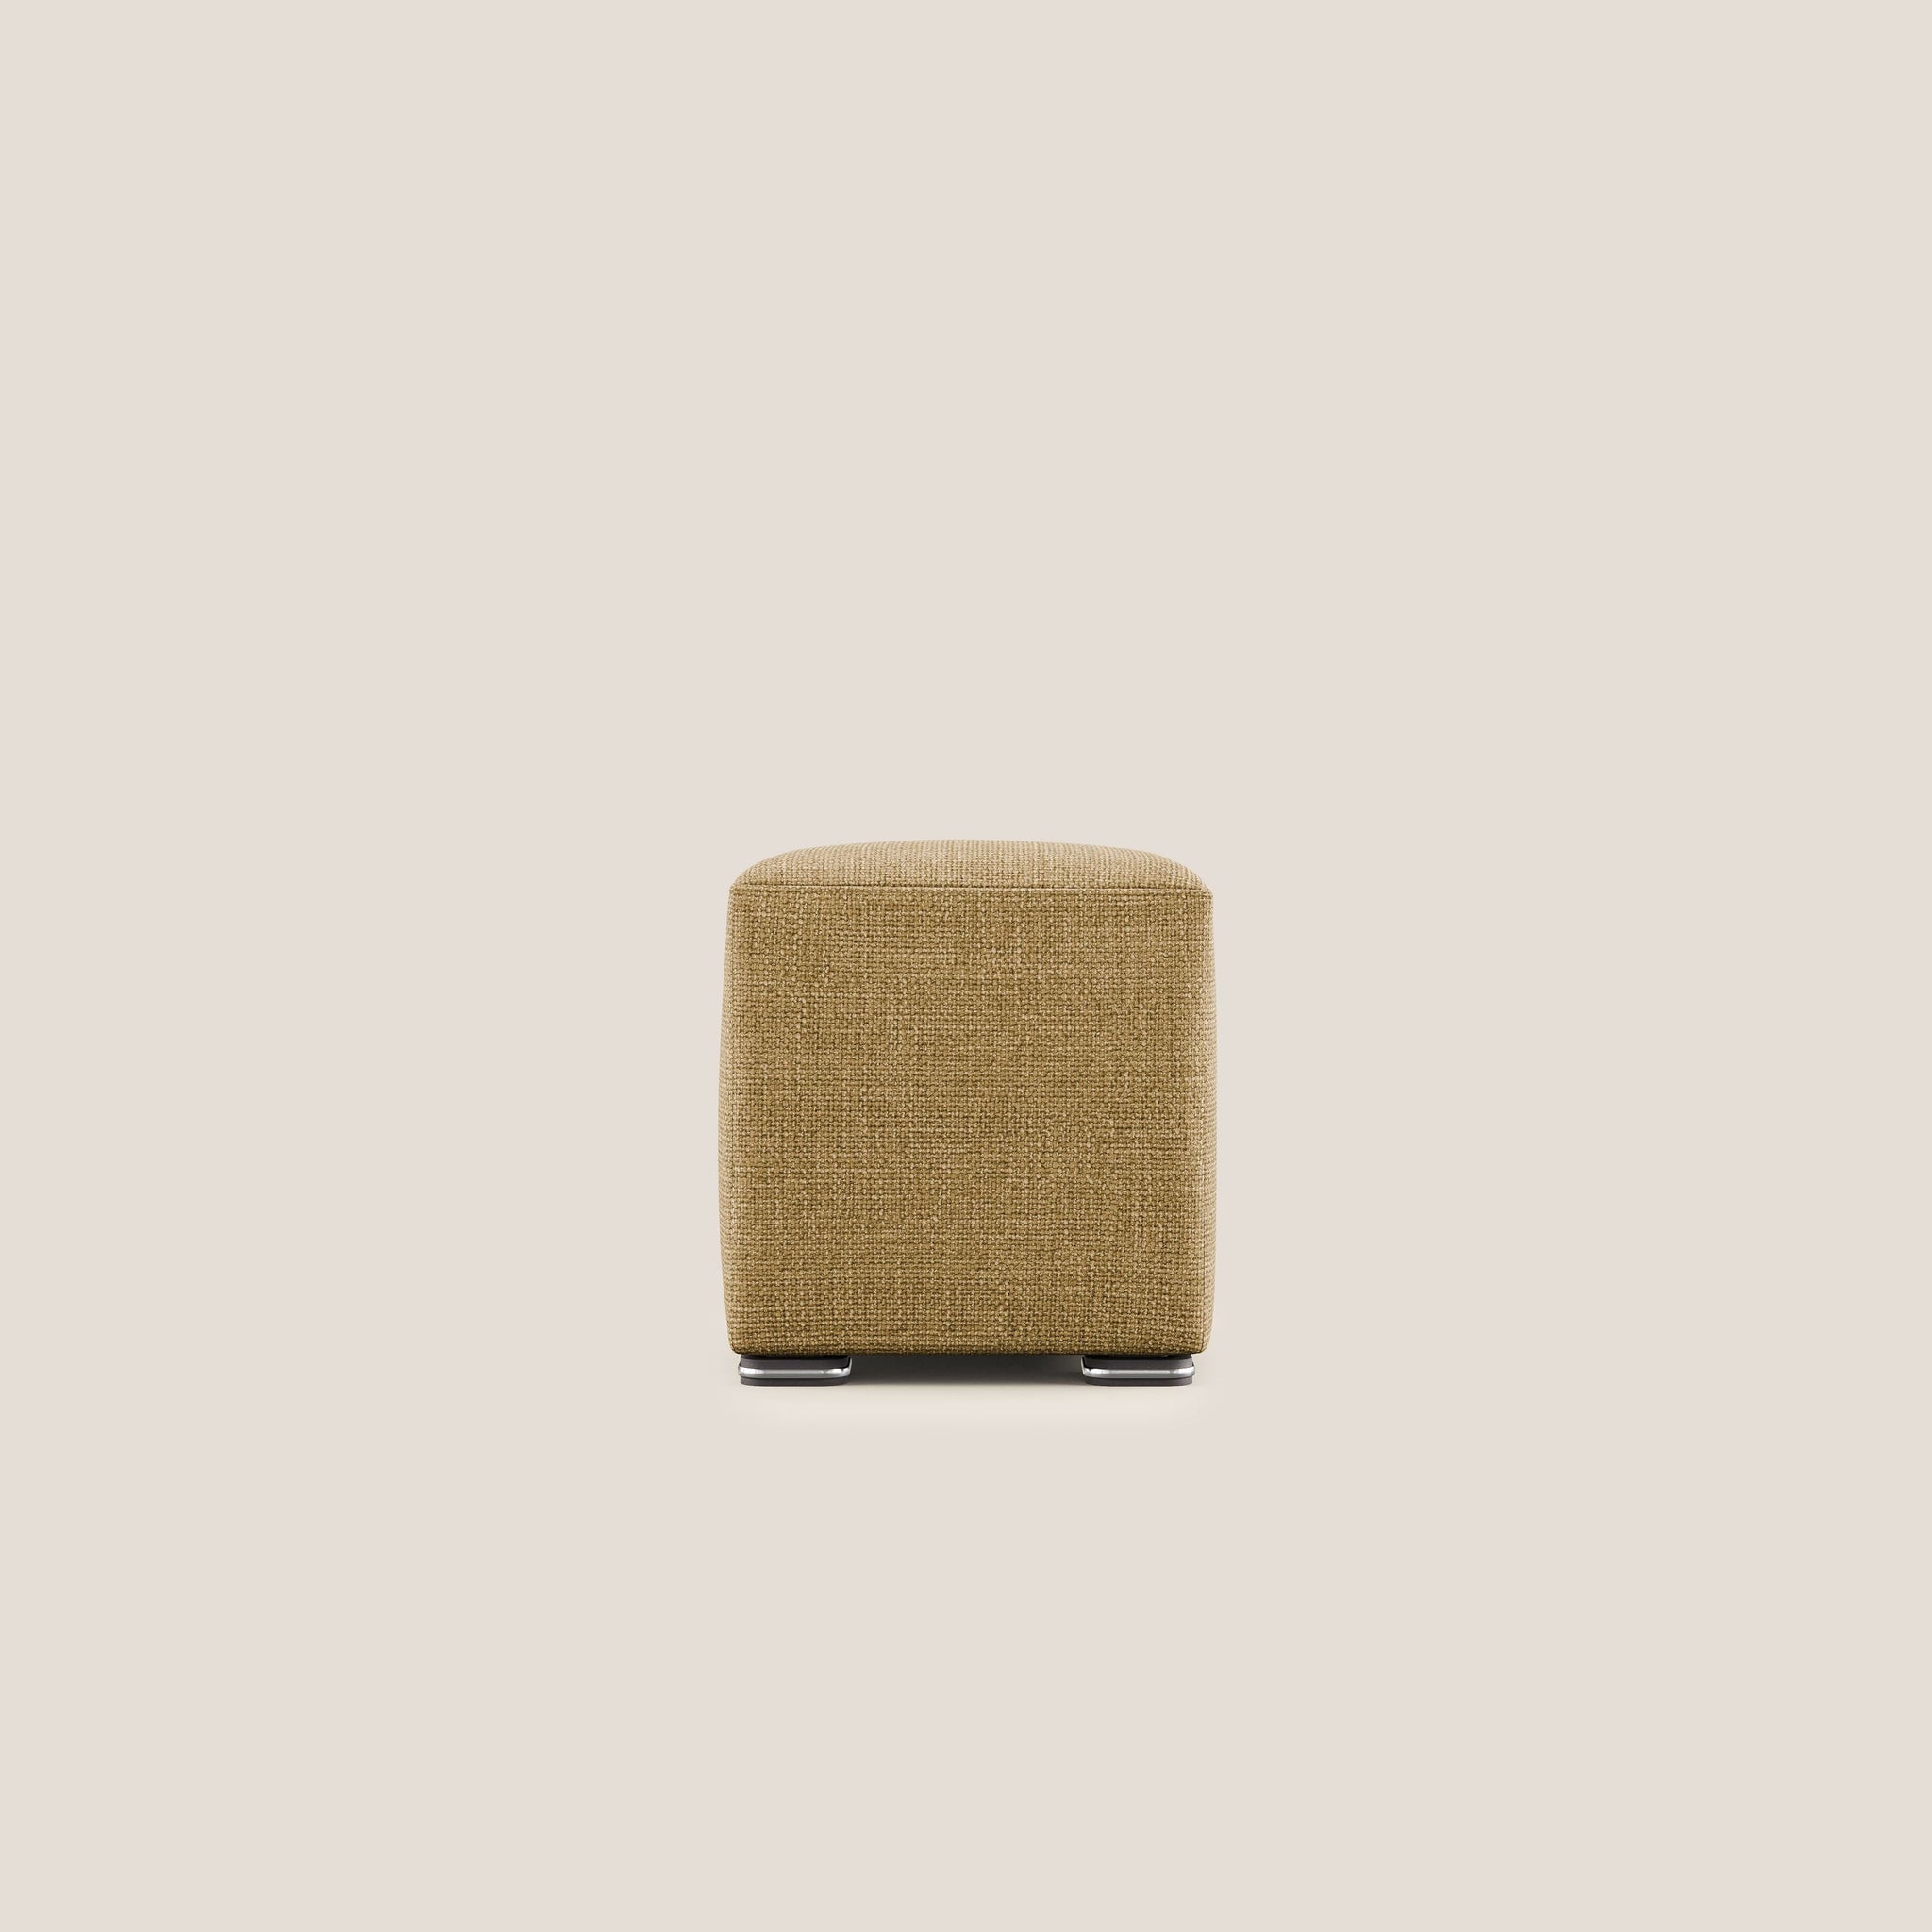 Cube Hocker aus weichem, wasserfestem Melange-Webstoff T06